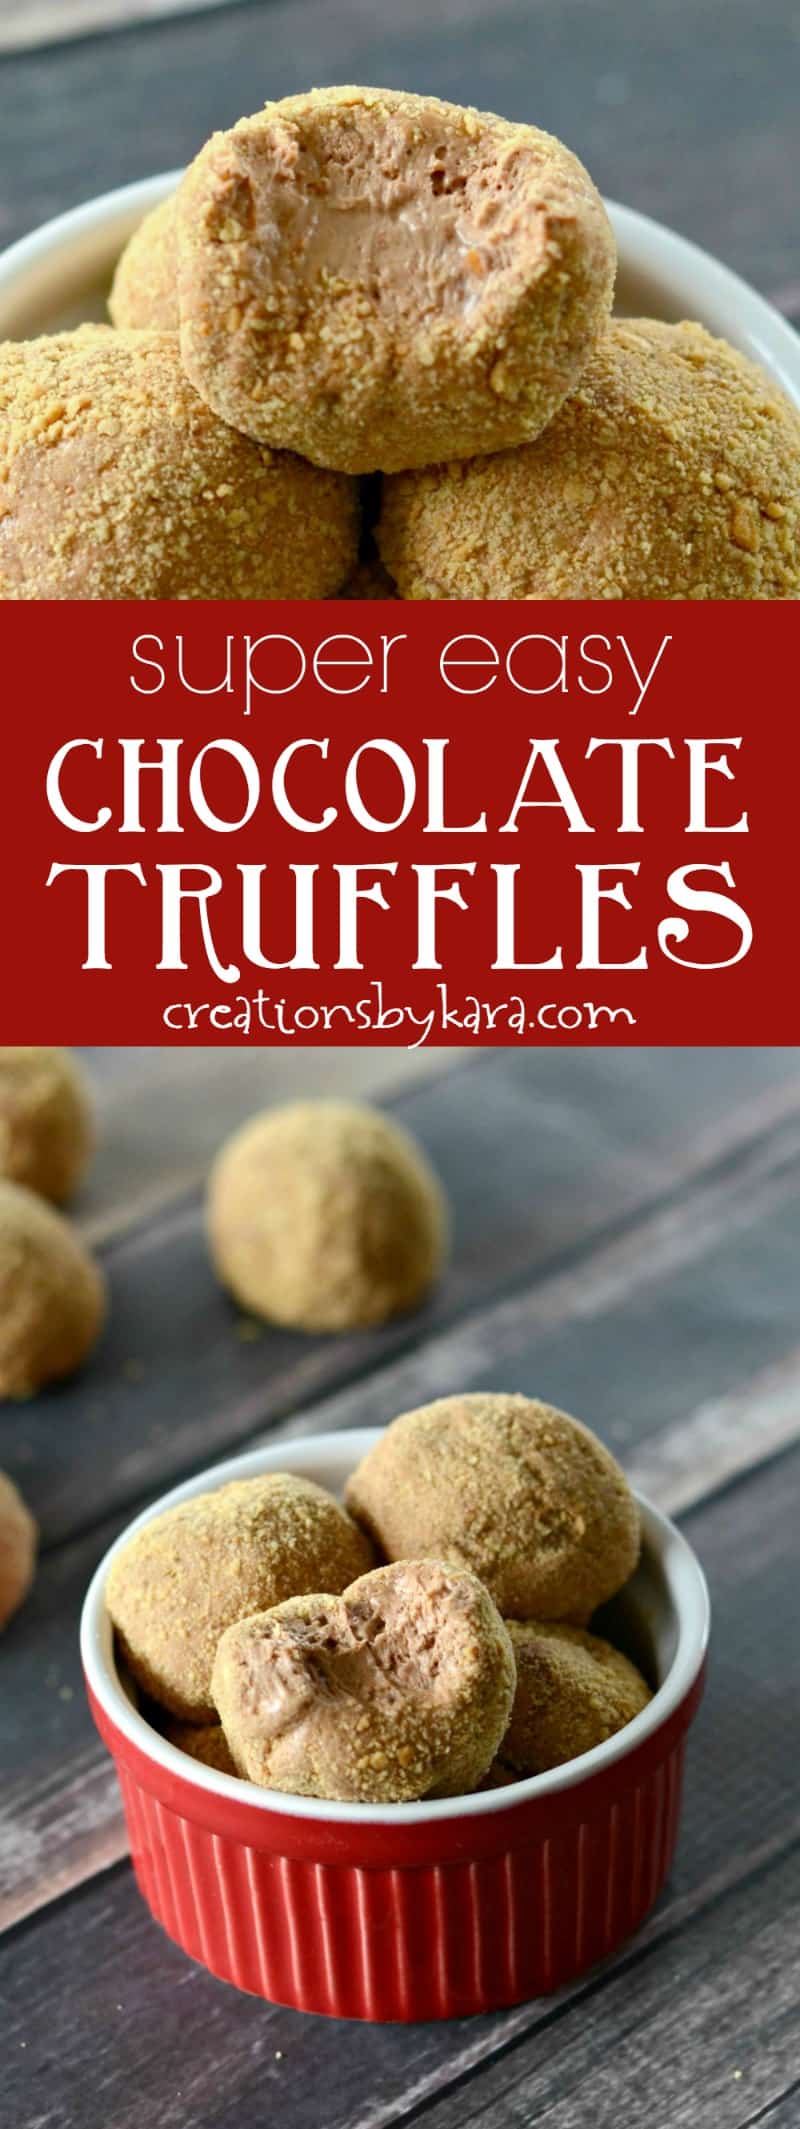 Chocolate Truffles